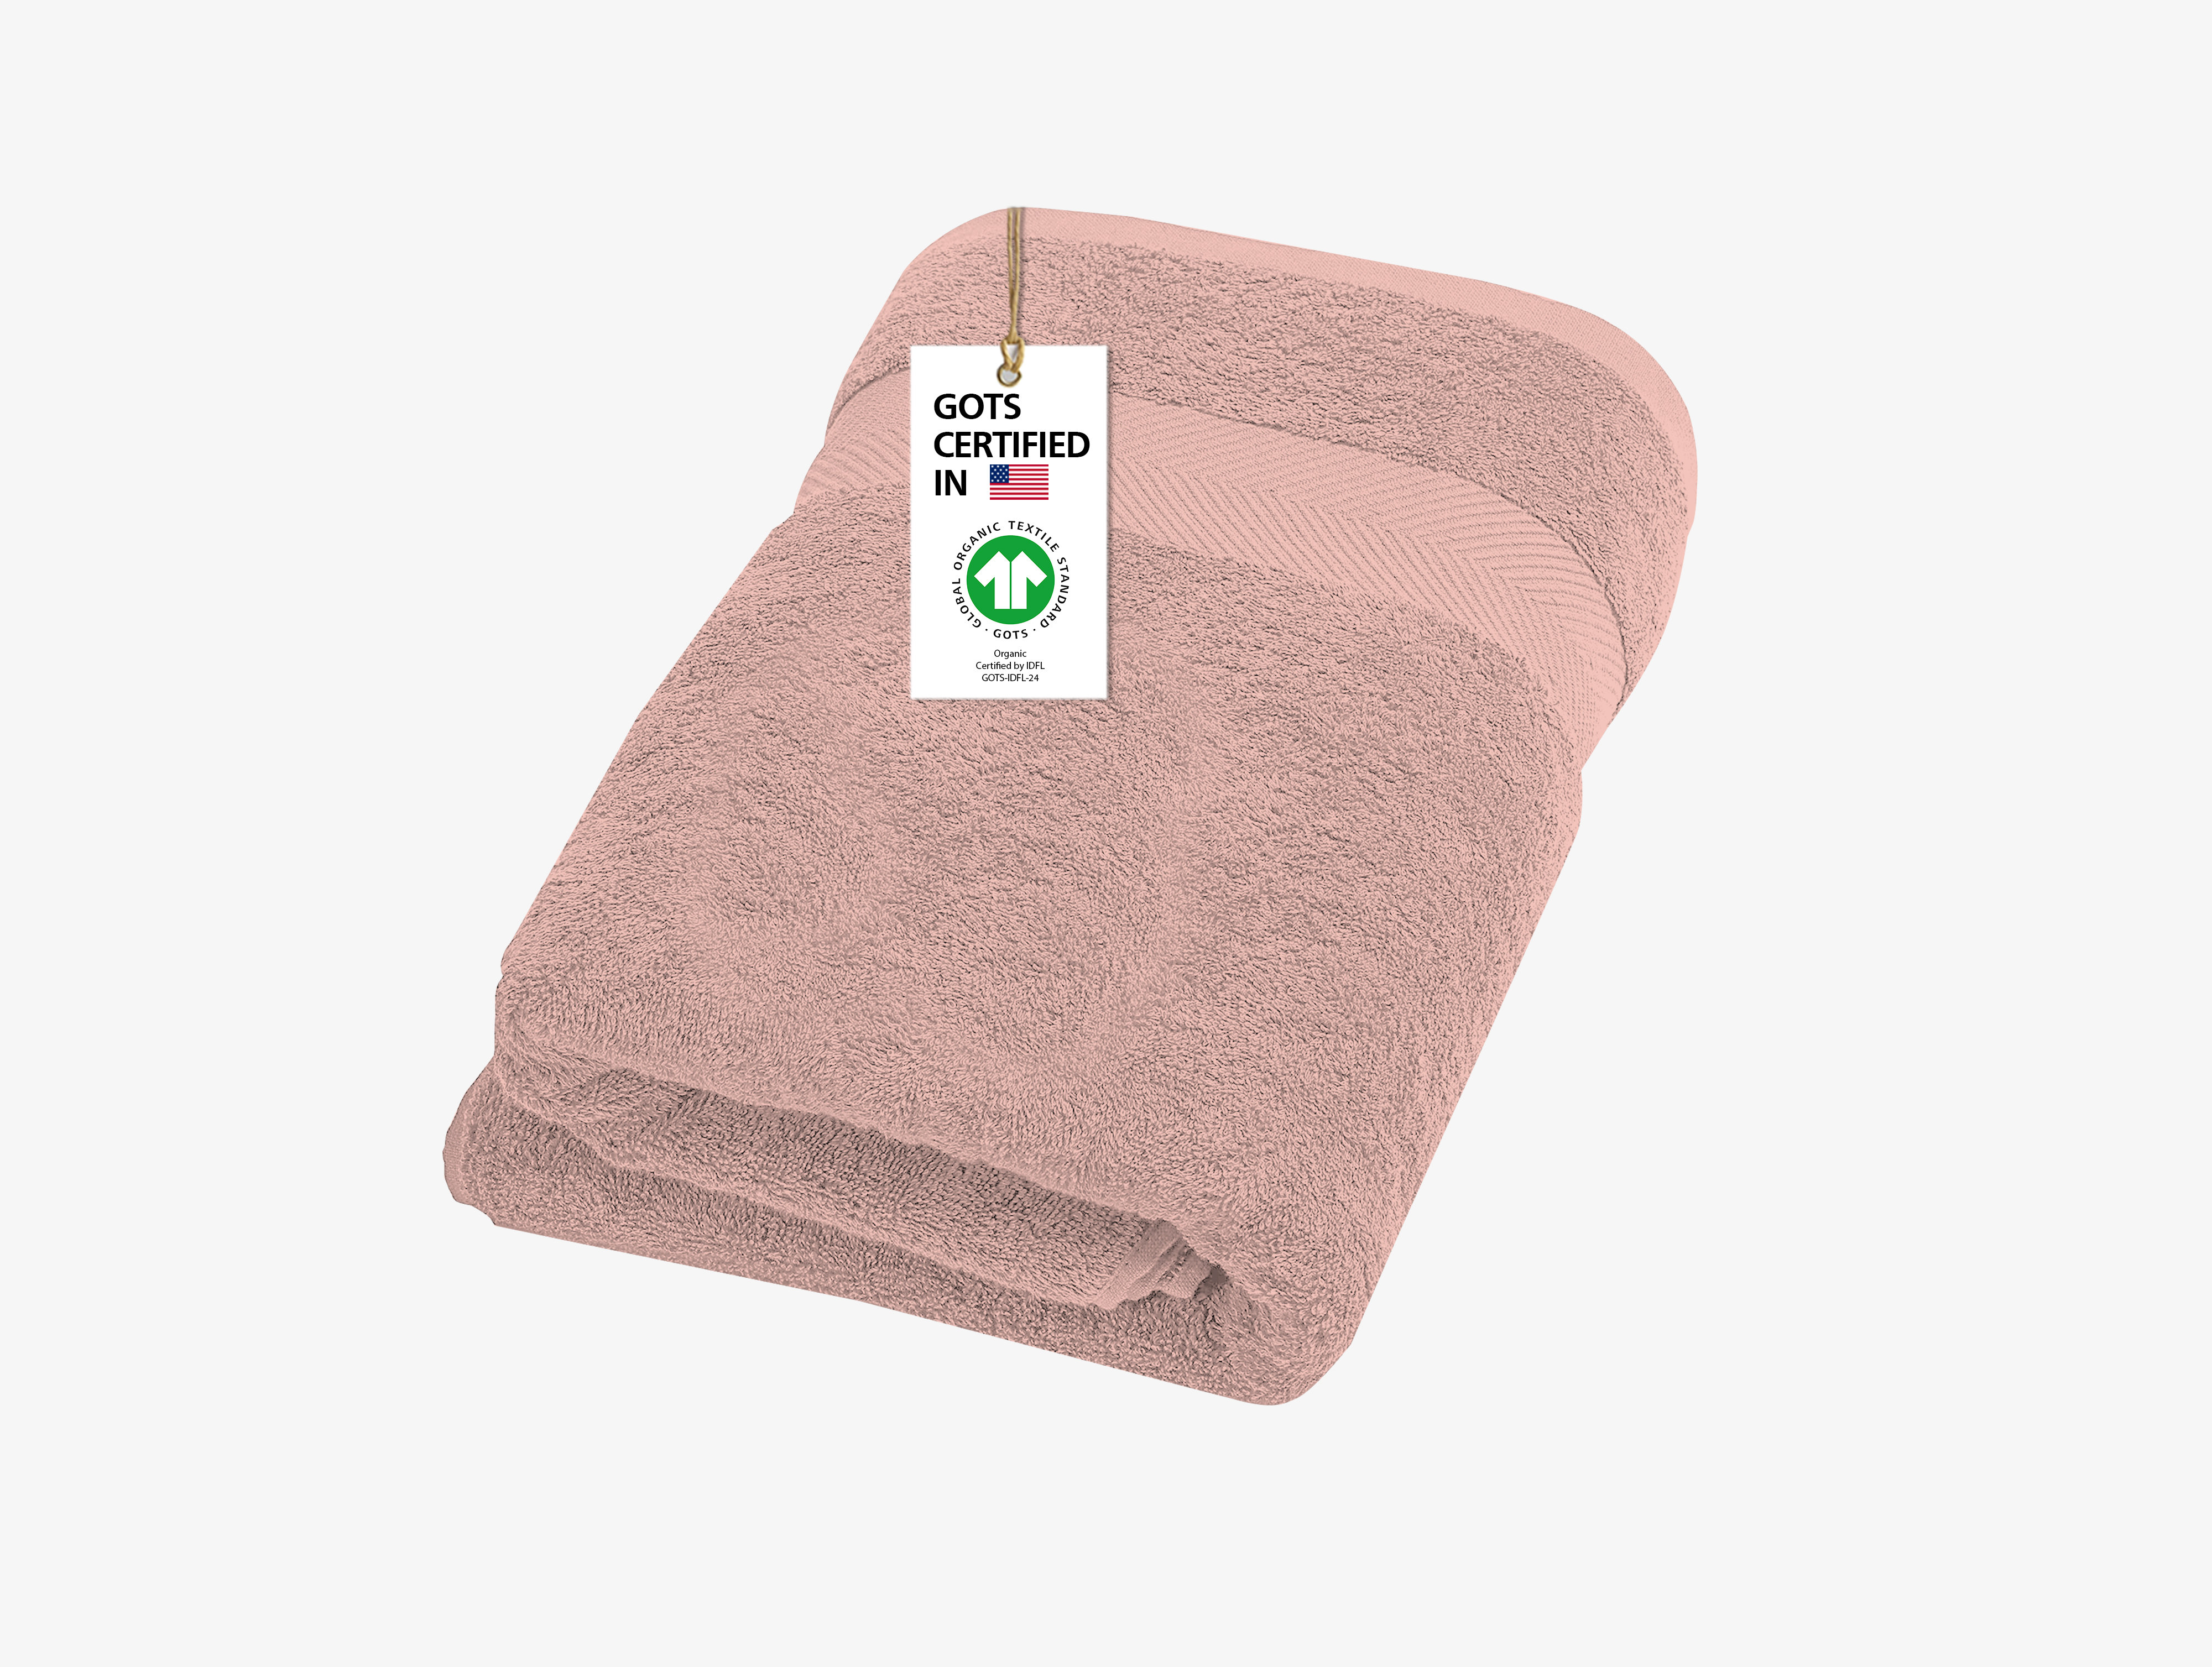 https://assets.wfcdn.com/im/00833520/compr-r85/2112/211227423/chudleigh-100-organic-cotton-1-piece-bath-towel.jpg